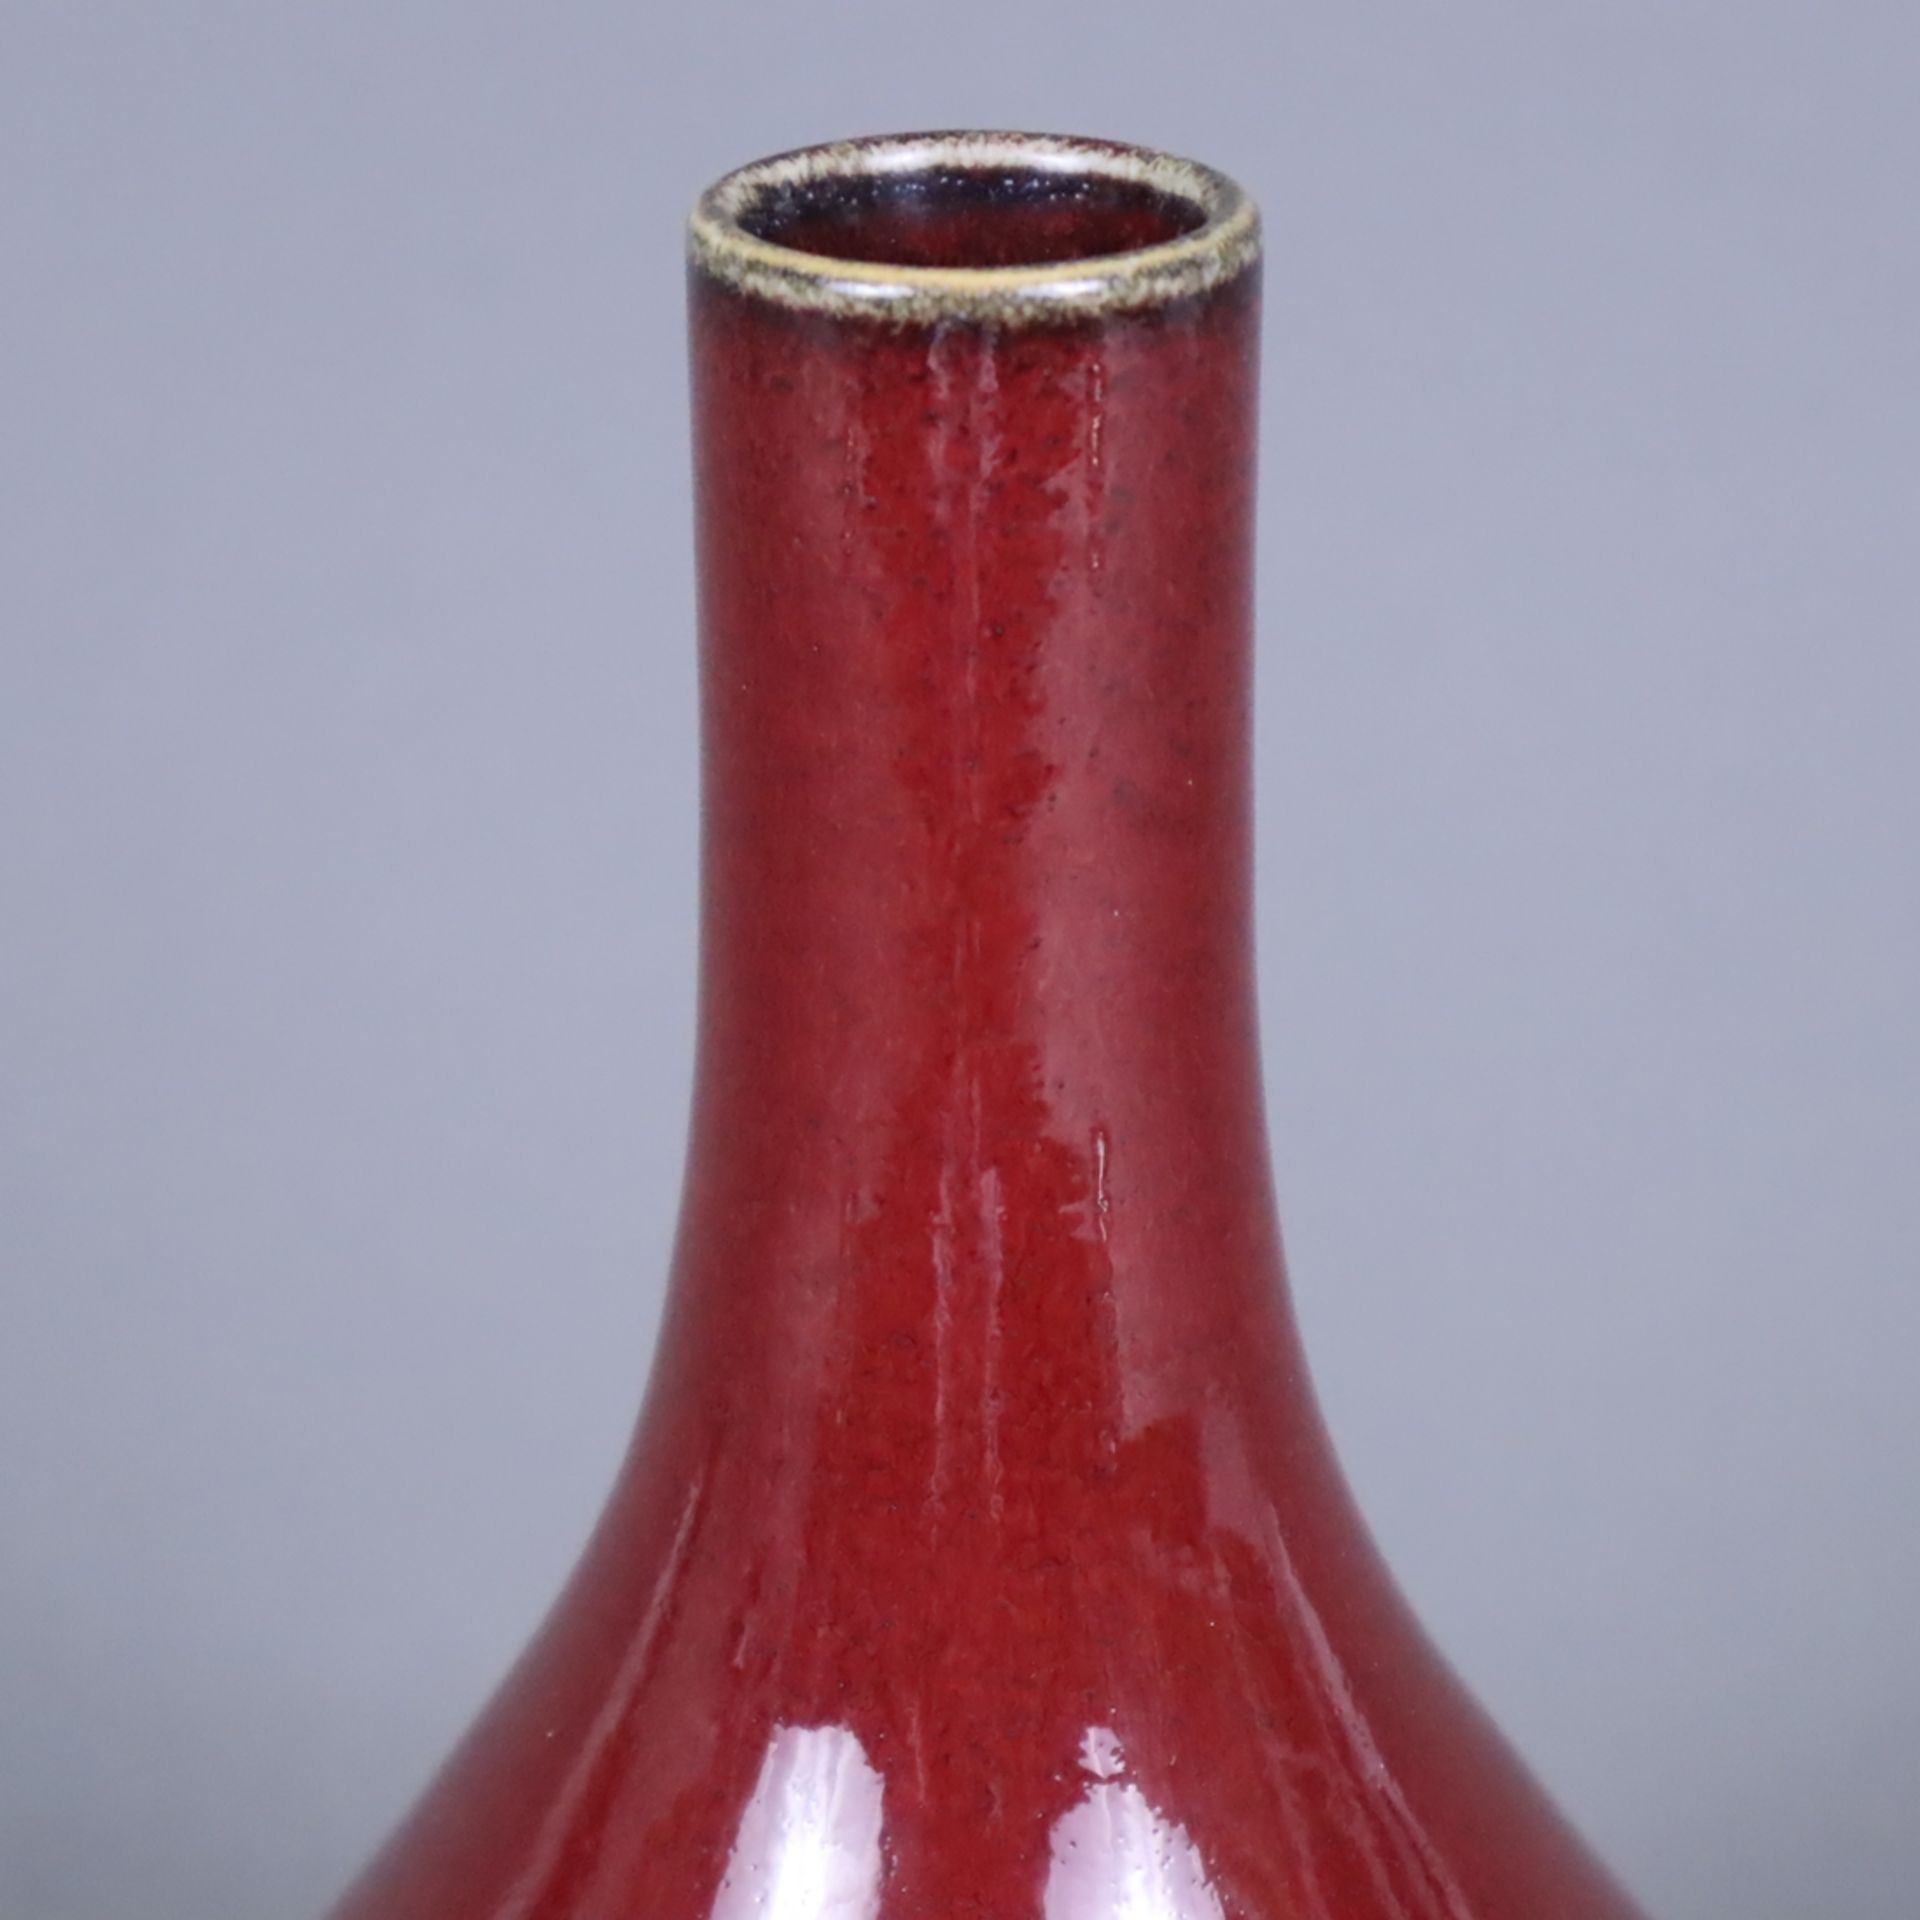 Flaschenvase - vom Typus Yuhuchunping, monochrome Ochsenblut-Überlaufglasur, im Bereich des Lippenr - Image 2 of 6